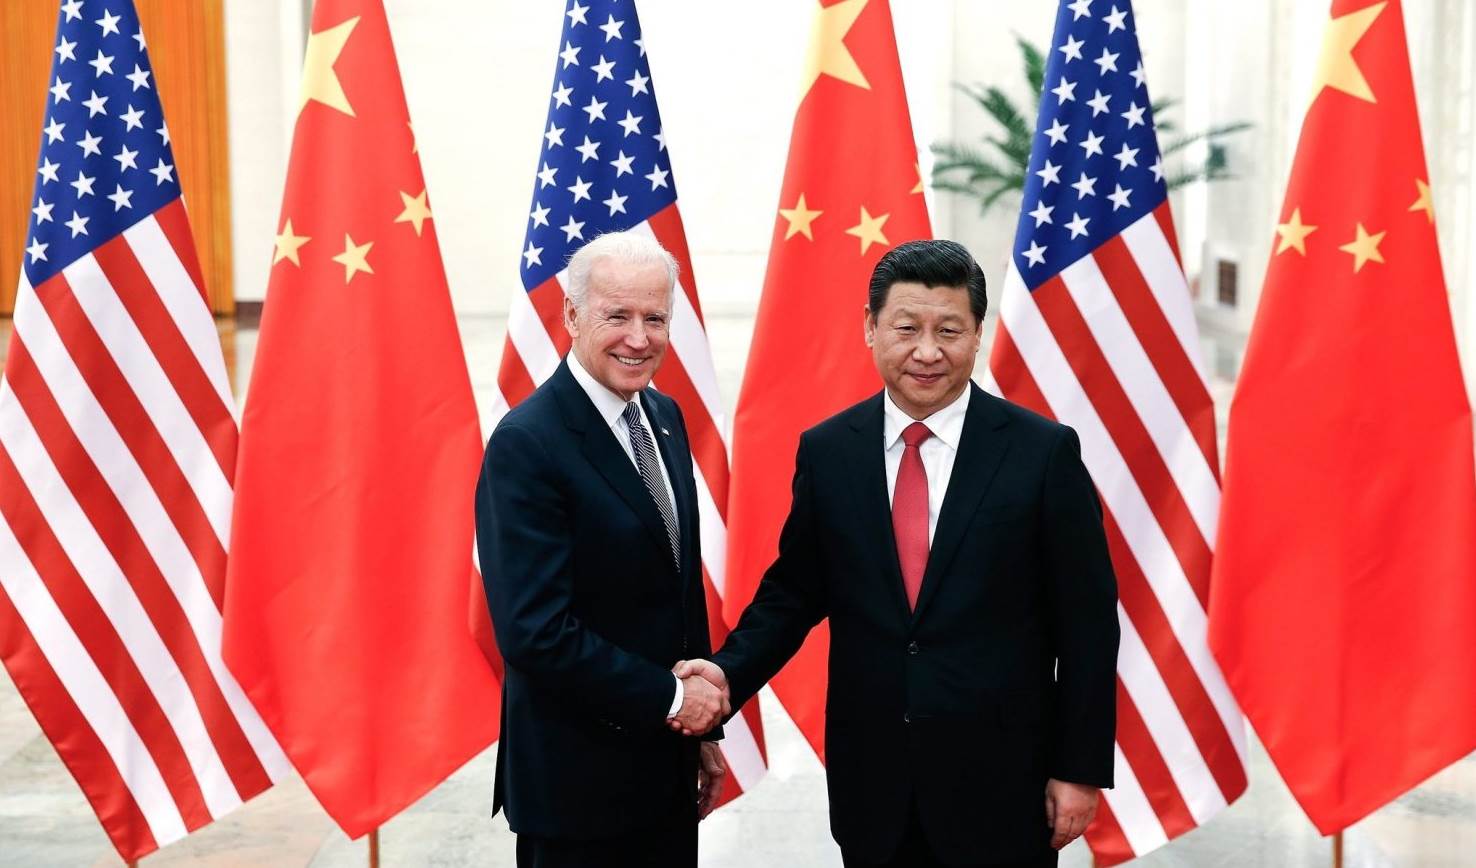 الرئيس الصيني لنظيره الامريكي: “الصدام” بين بلدينا سيكون كارثيا على العالم